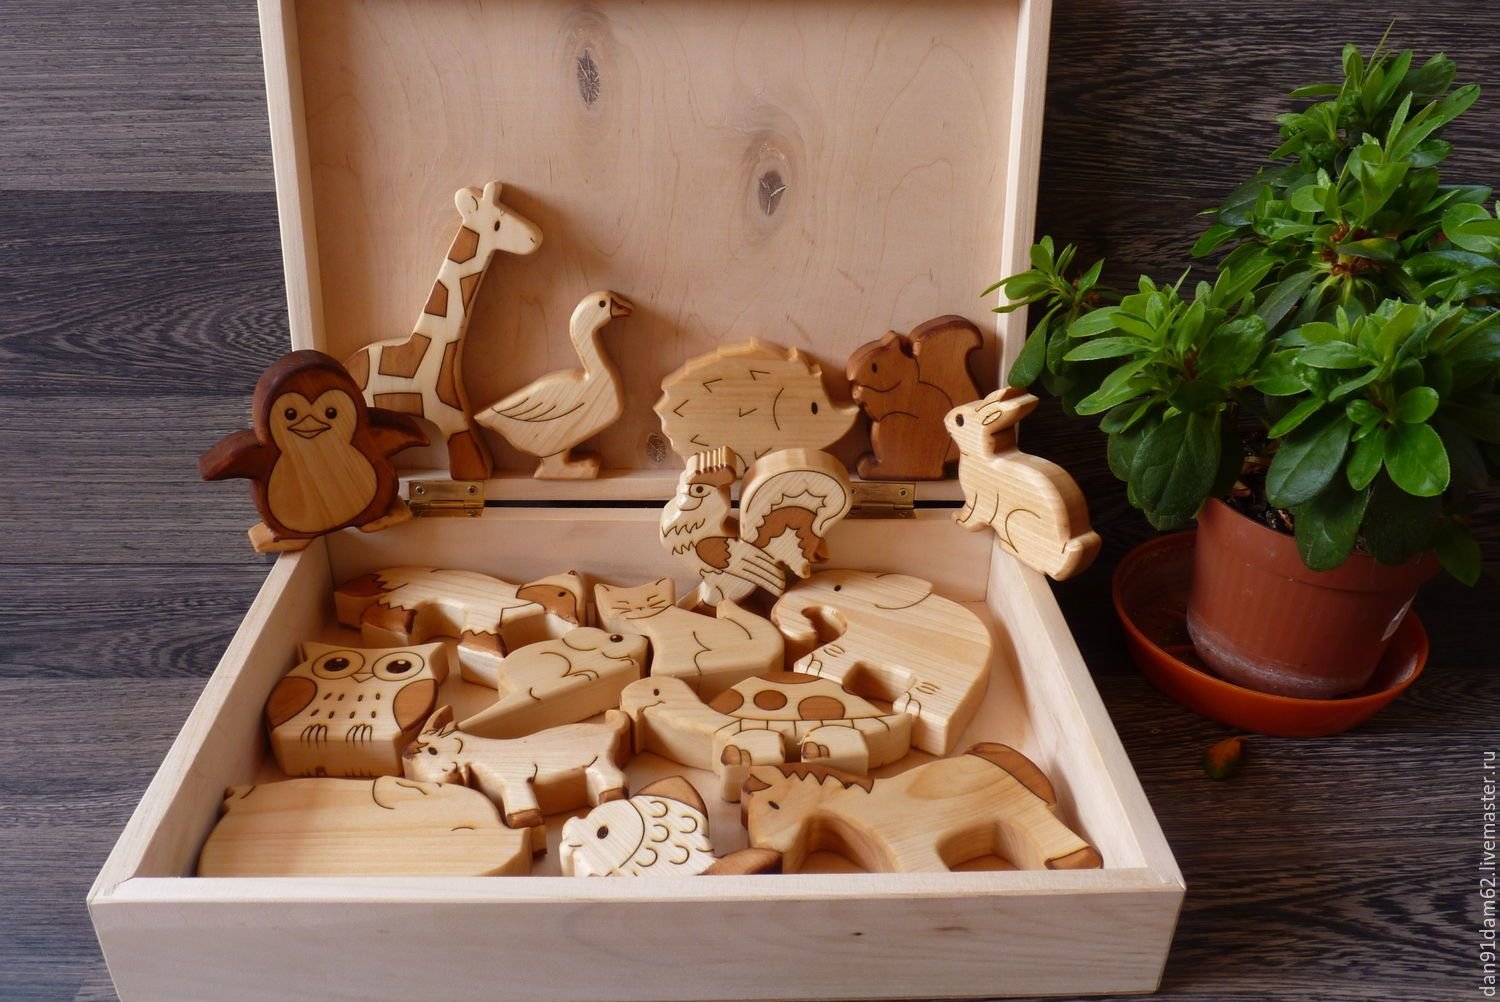 Wooden master. Деревянные игрушки. Необычные игрушки из дерева. Деревянные игрушки для детей. Деревянные изделия для детей.